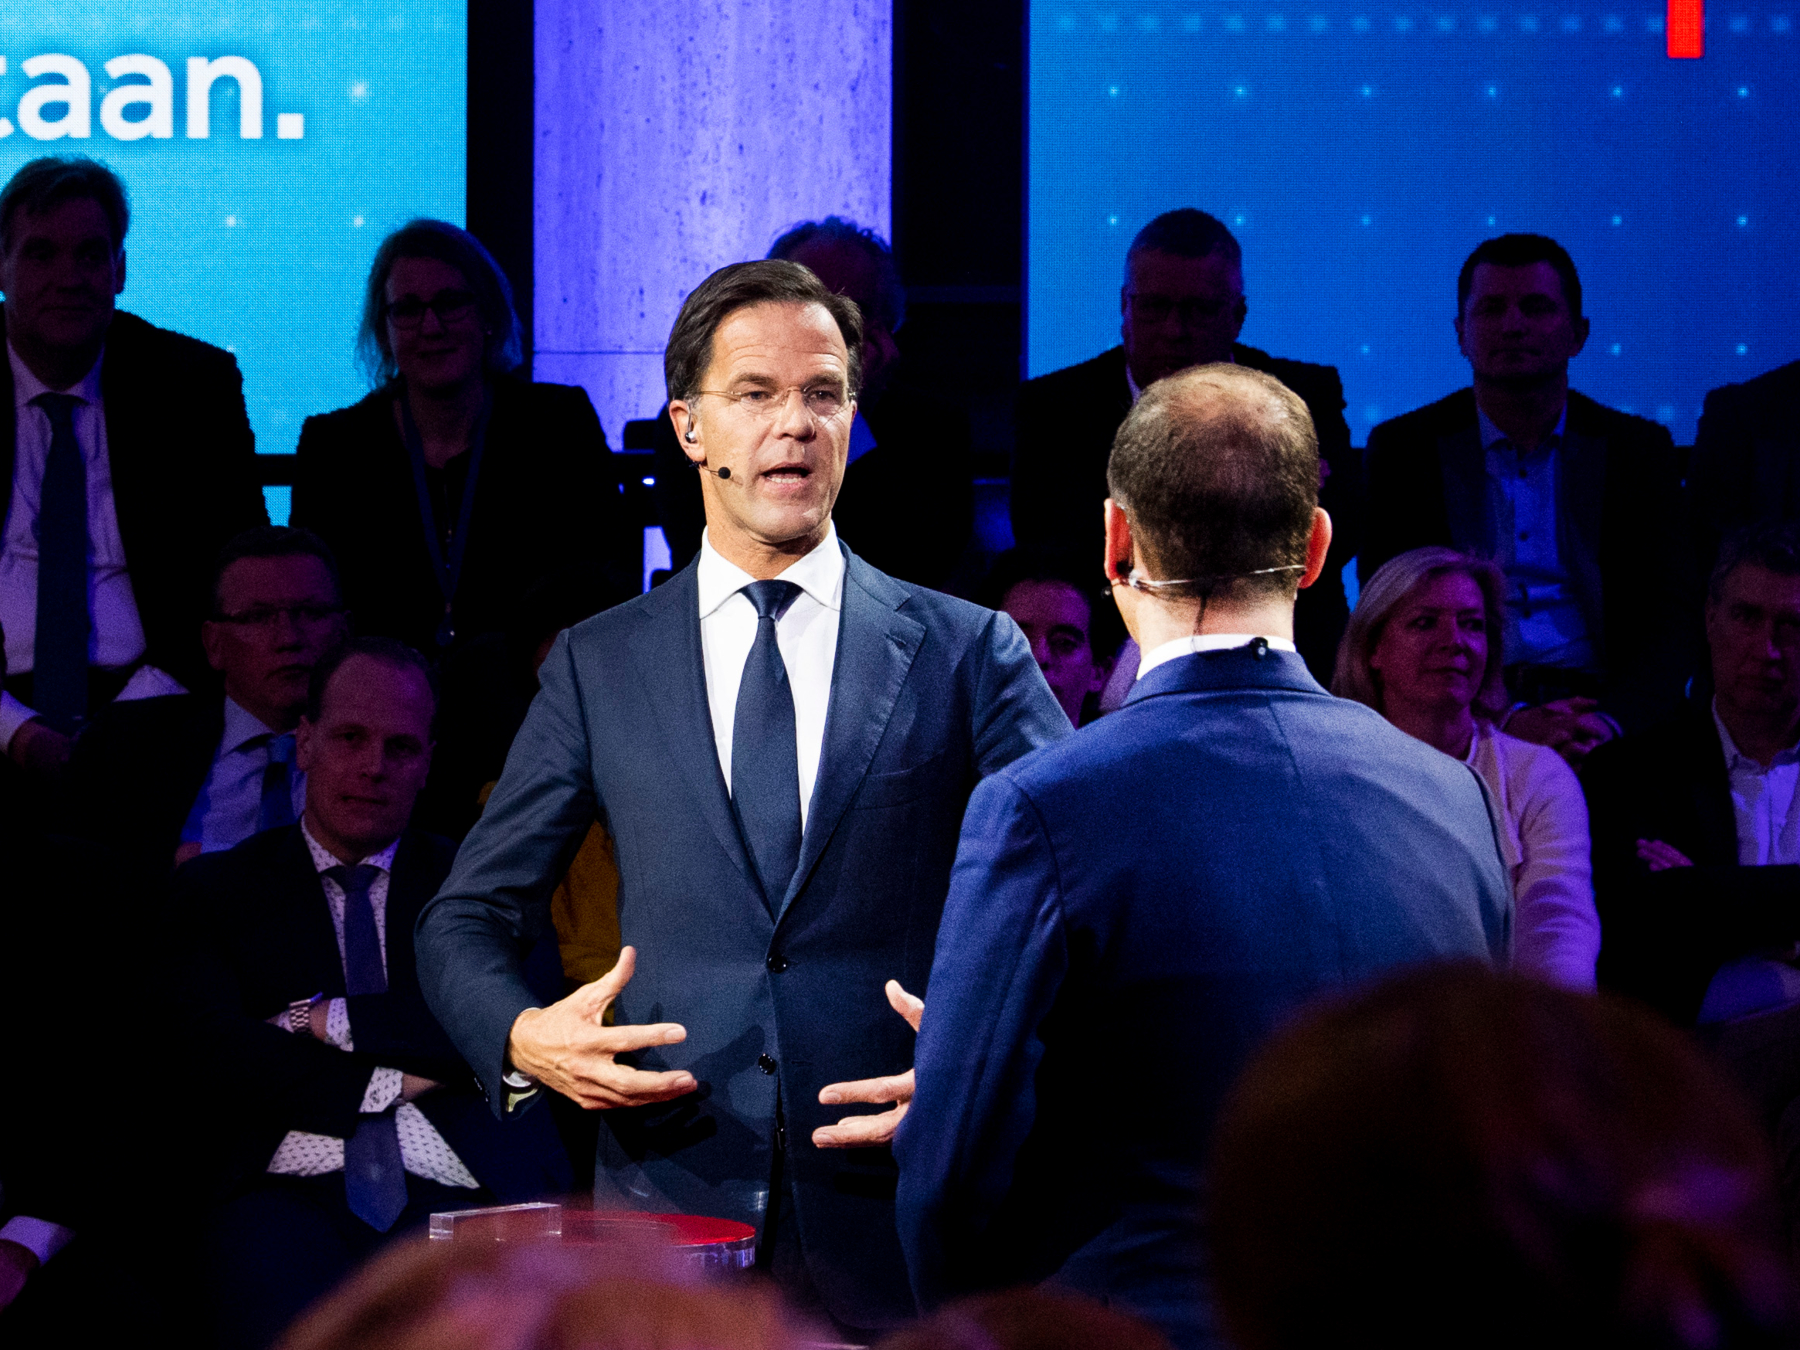 Lijsttrekkers Lodewijk Asscher (PvdA) en Mark Rutte (VVD) tijdens het NOS-slotdebat.